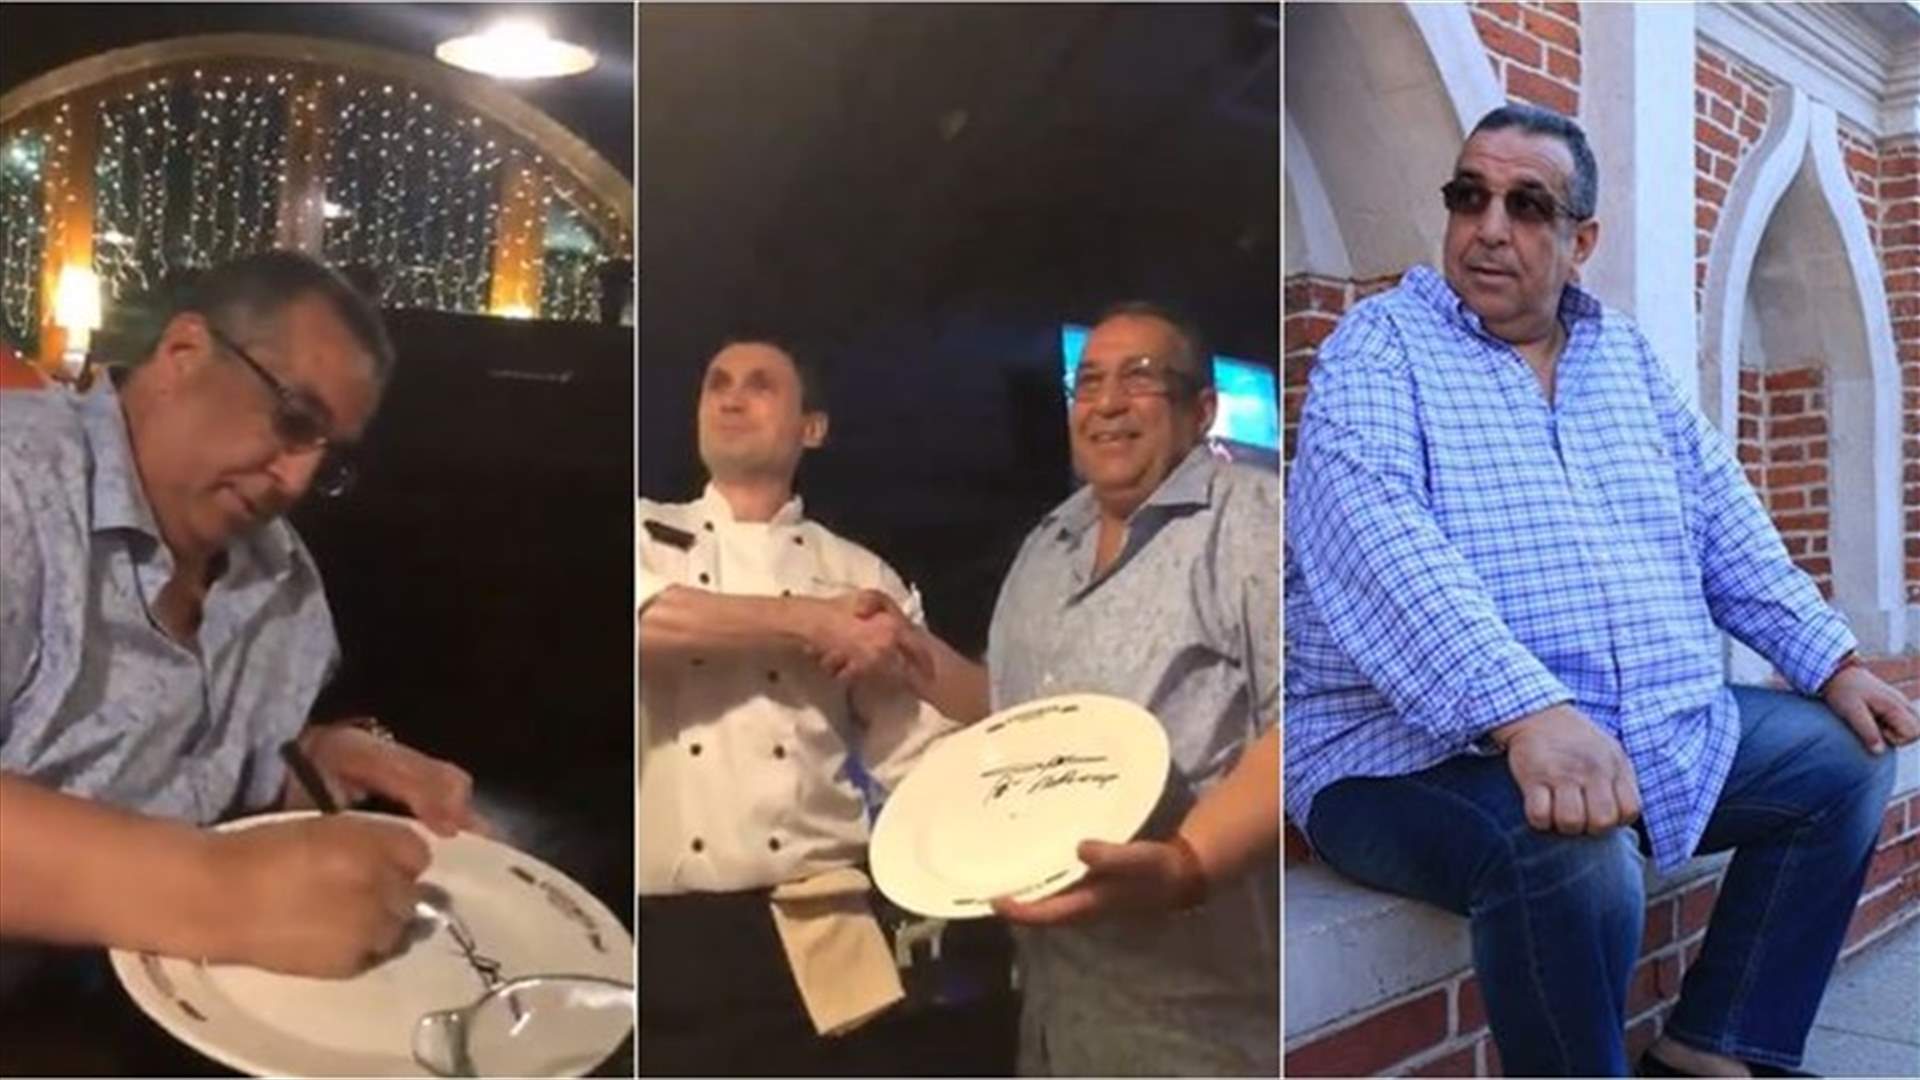 بالفيديو- عربي ادعى أنه رئيس حكومة ليحصل على حجز في مطعم... إليكم النتيجة!